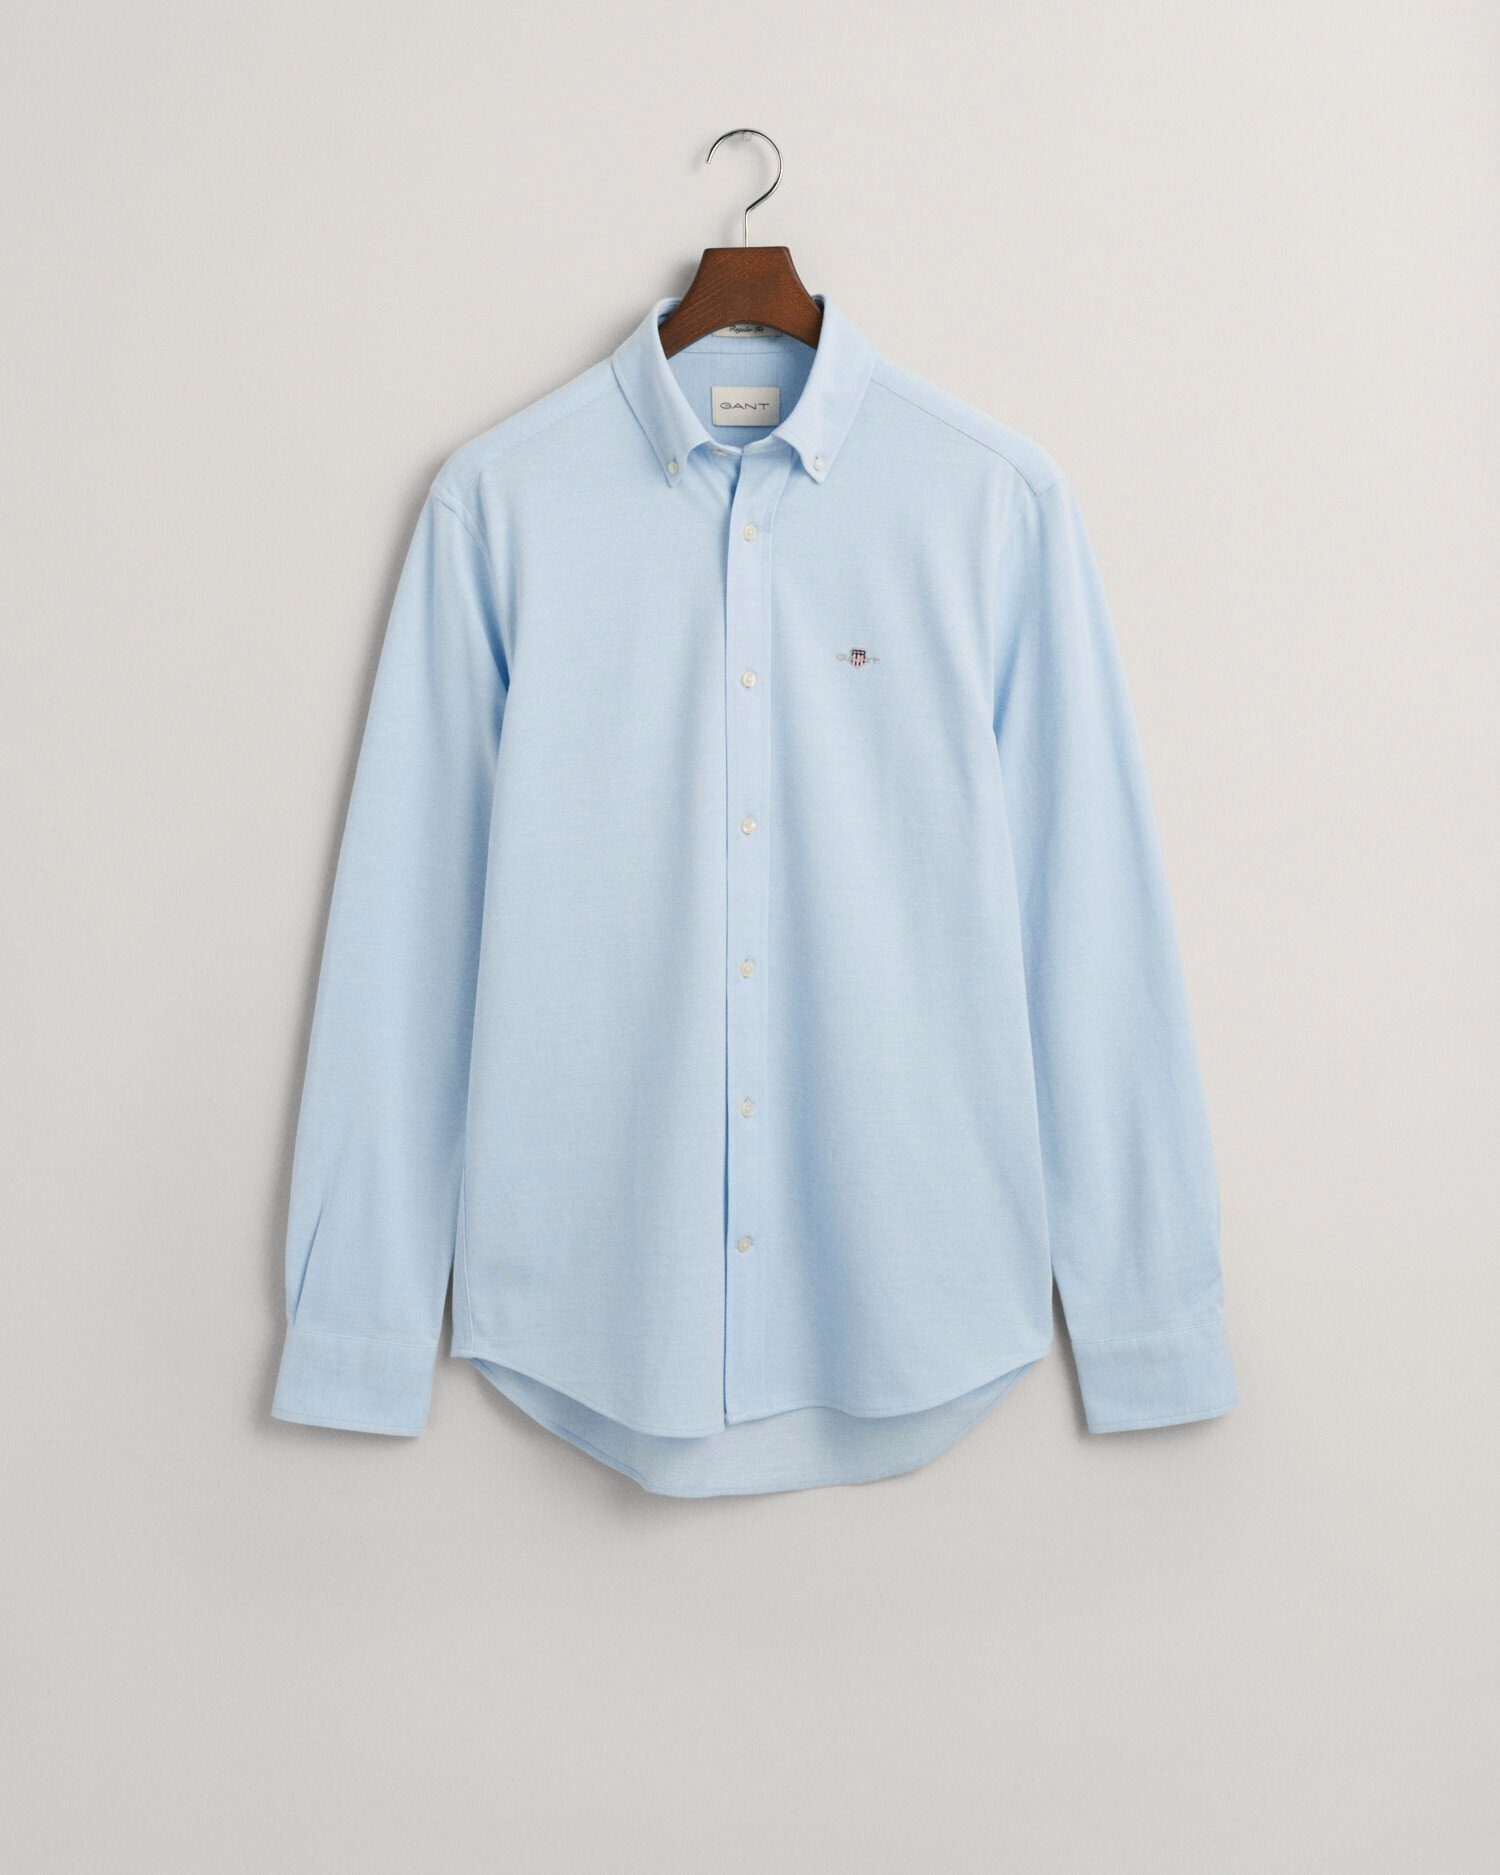 CAPRI Poloshirt JERSEY Gant REG BLUE SHIRT PIQUE